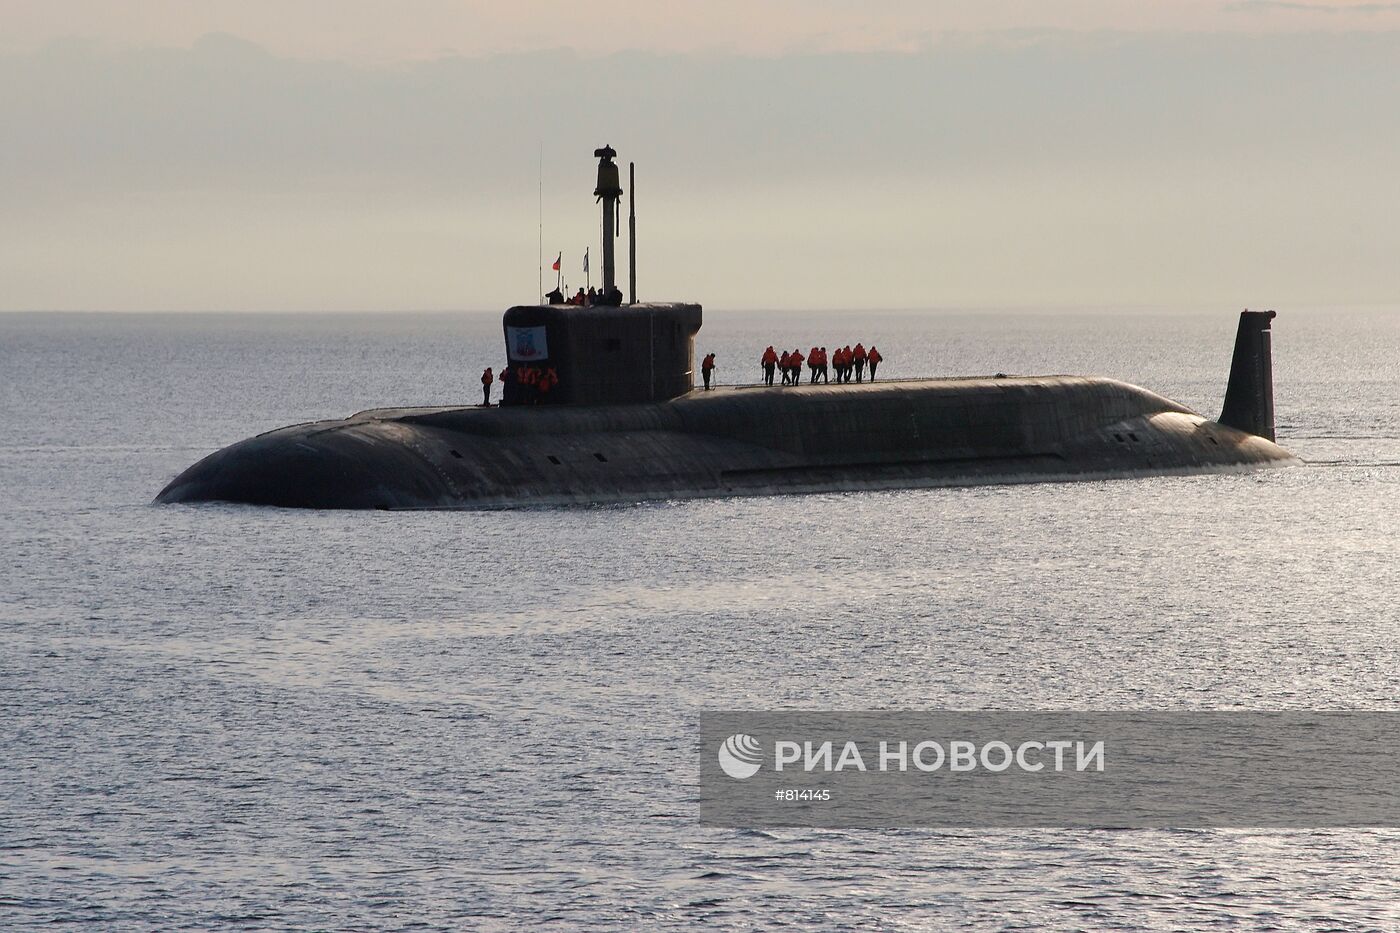 Атомная подводная лодка (АПЛ) "Юрий Долгорукий"